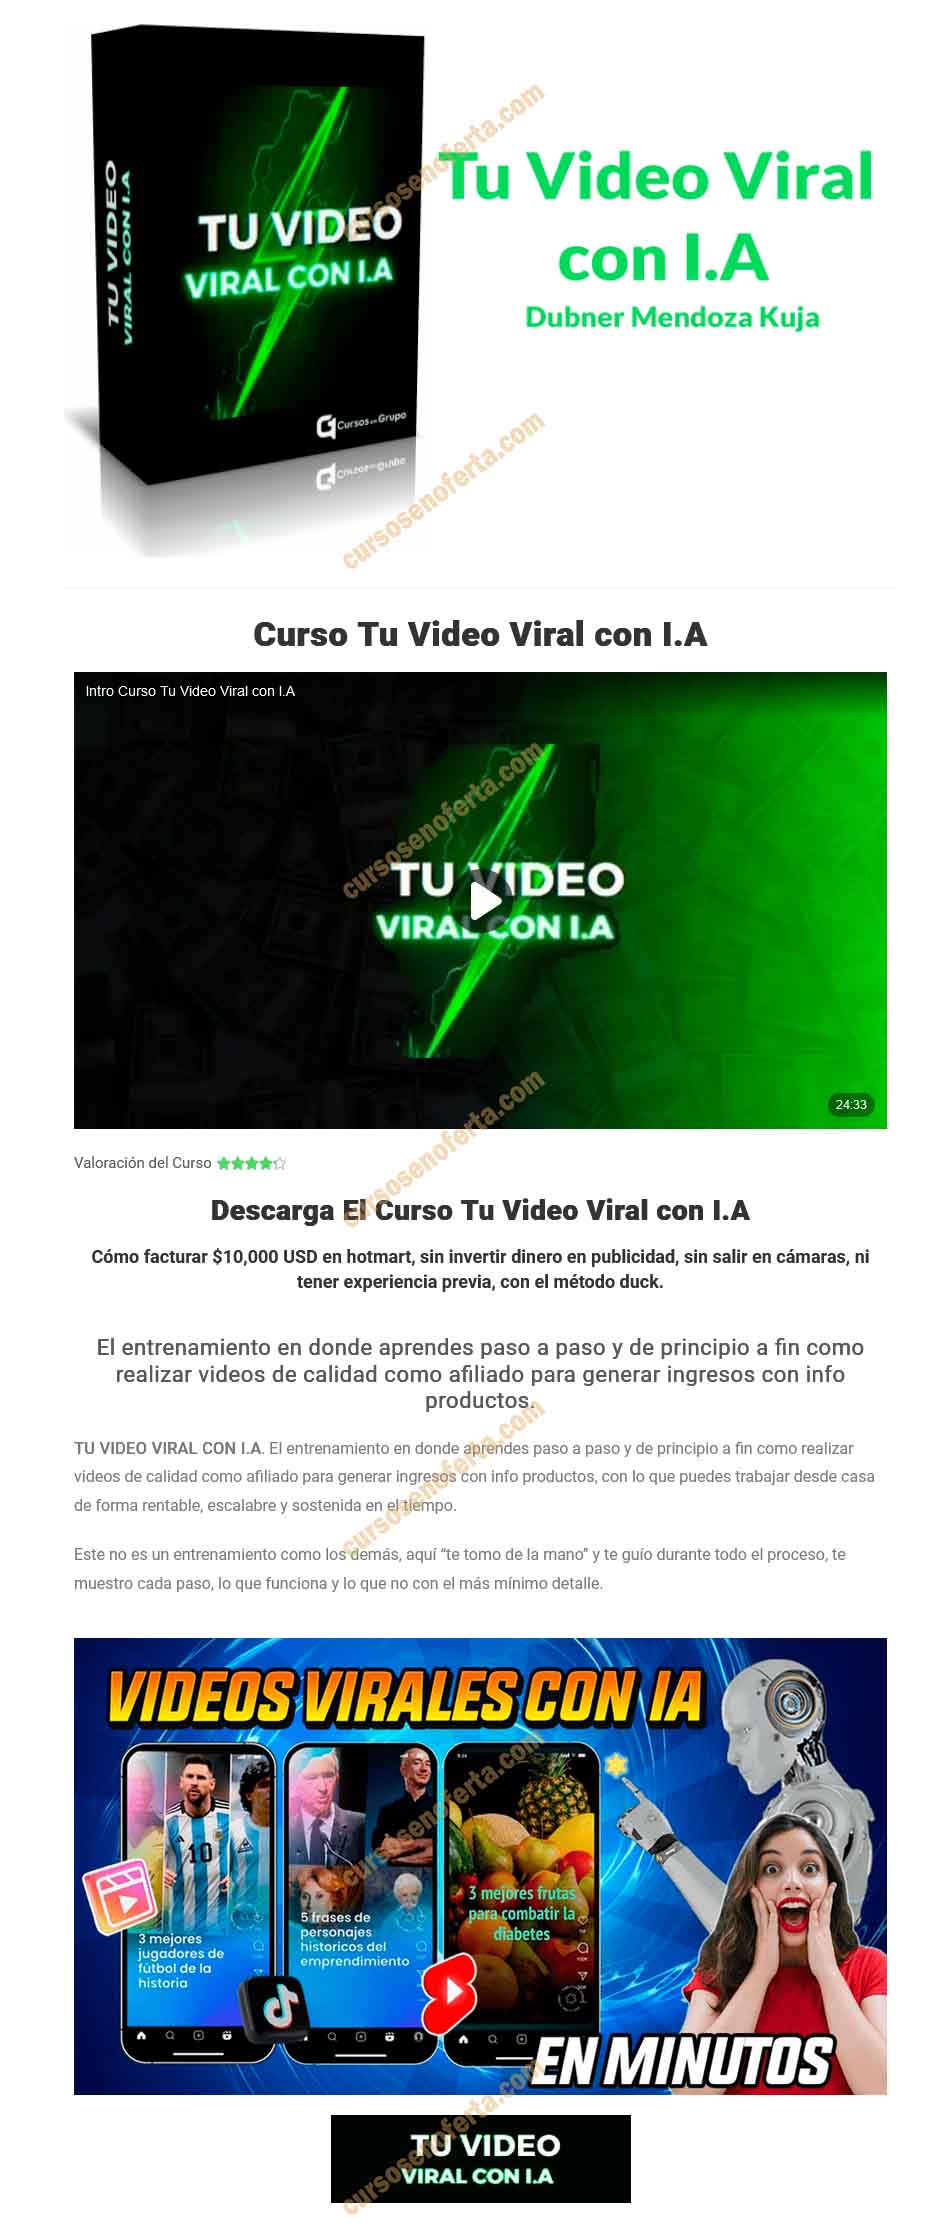 Tu Video Viral con IA - Dubner Mendoza